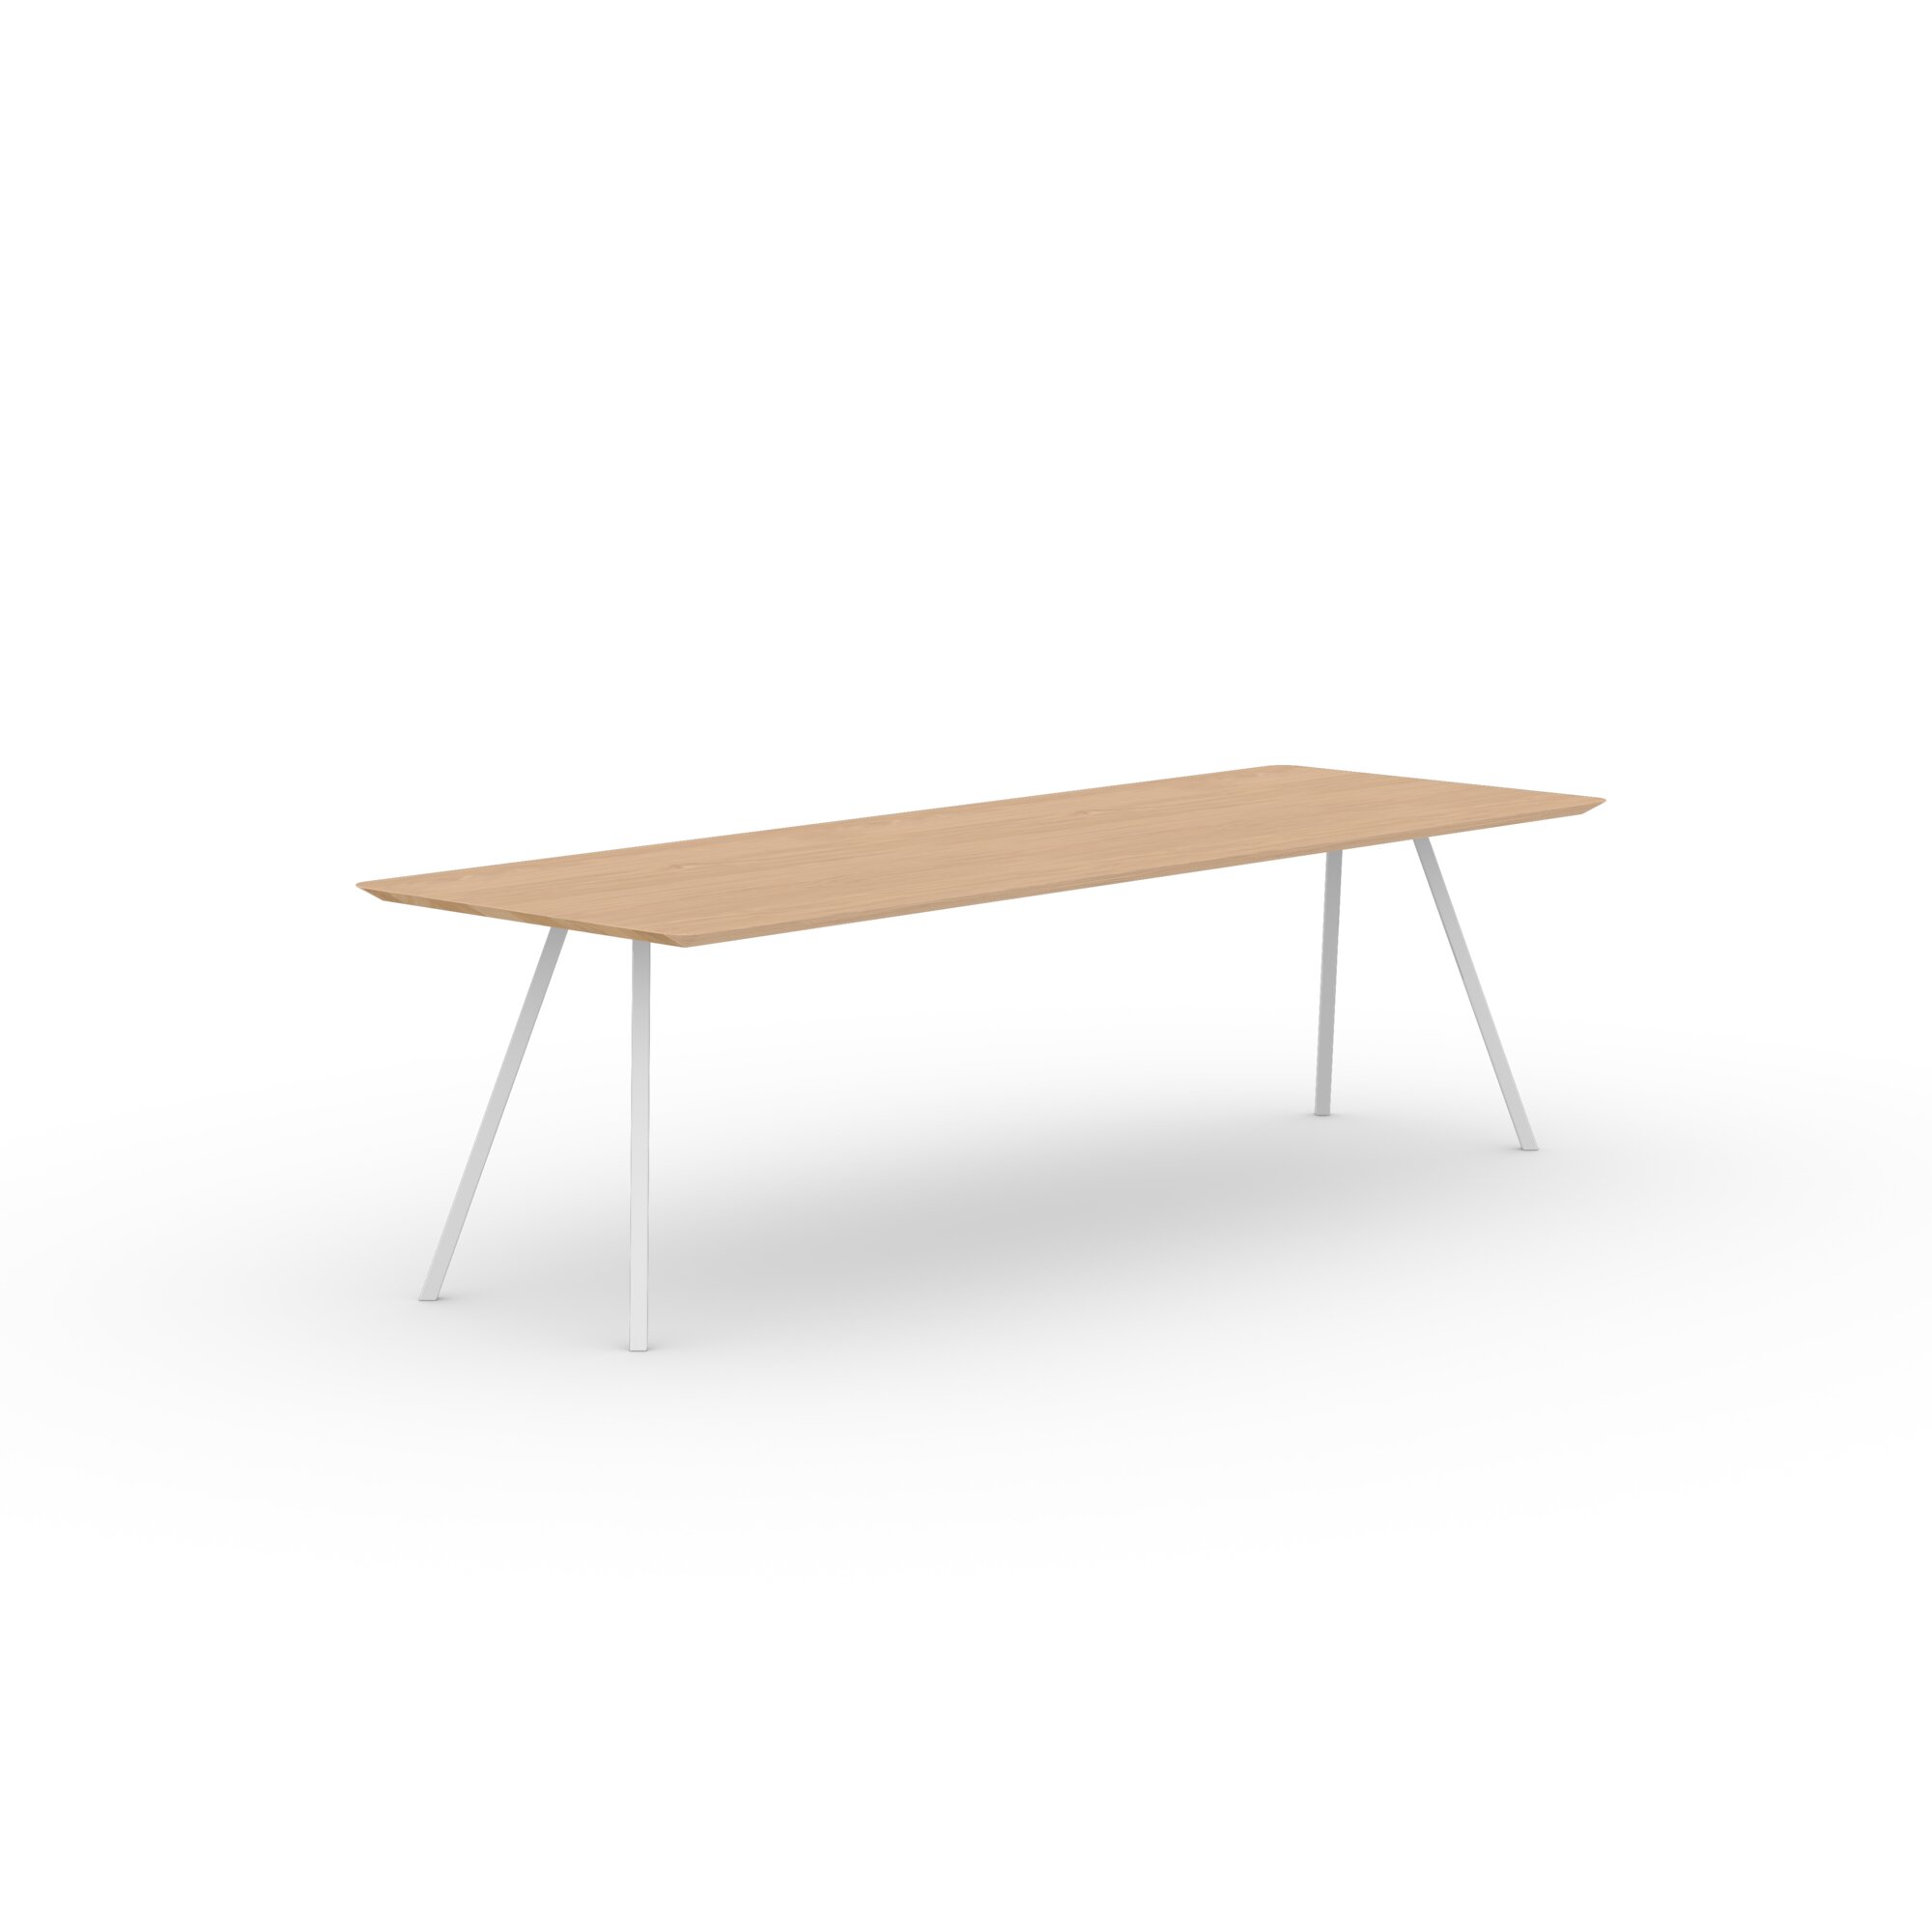 Rectangular Design dining table | Slim Co Steel white powdercoating | Oak hardwax oil natural light | Studio HENK| 